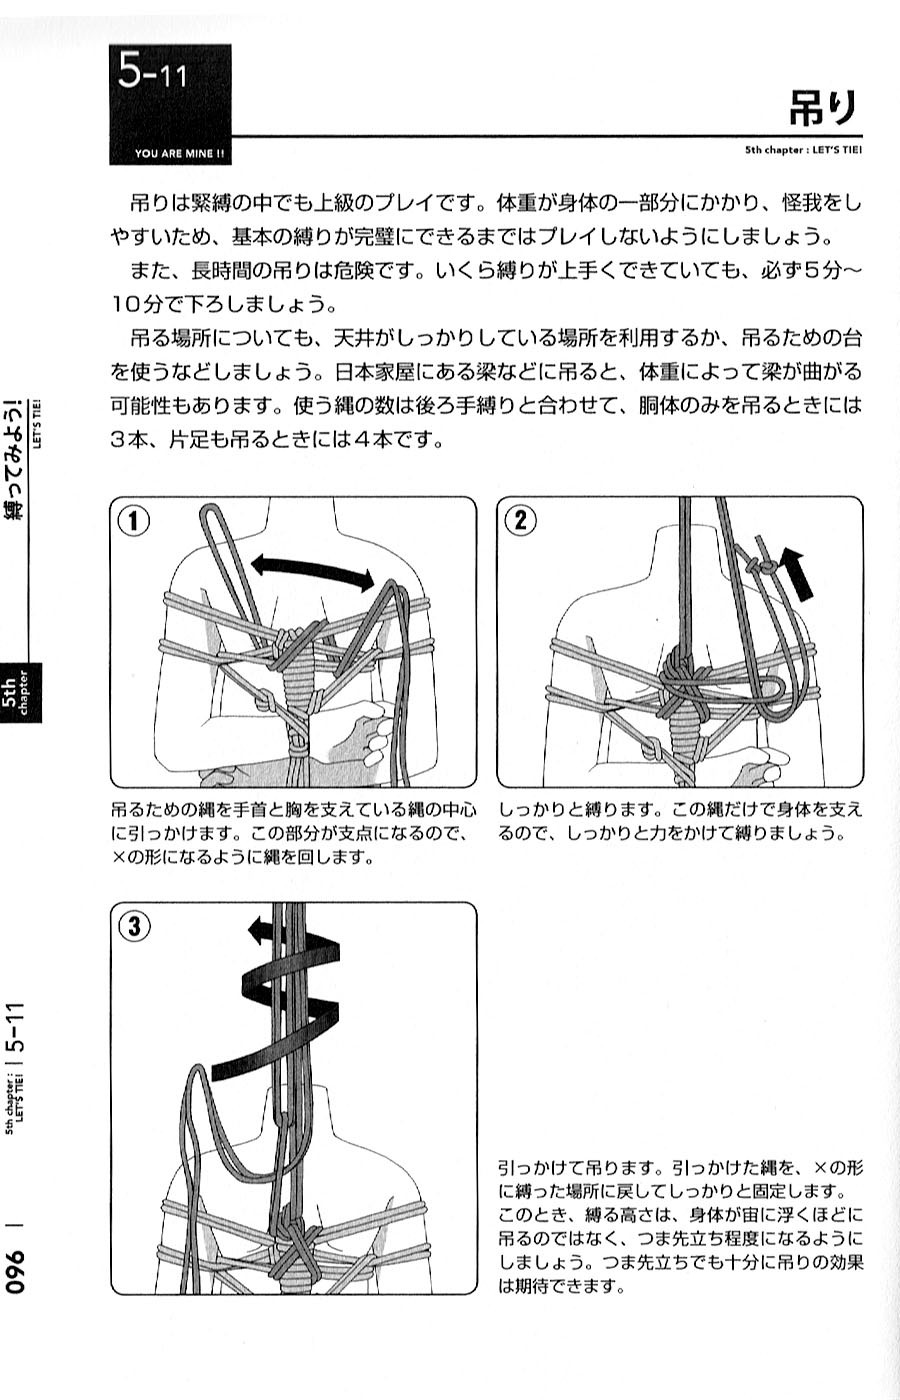 bdsmgeek:  bdsmgeek:  Hajimete no SM Guide pg. 90-97 Buy it on Amazon.co.jp  Learn